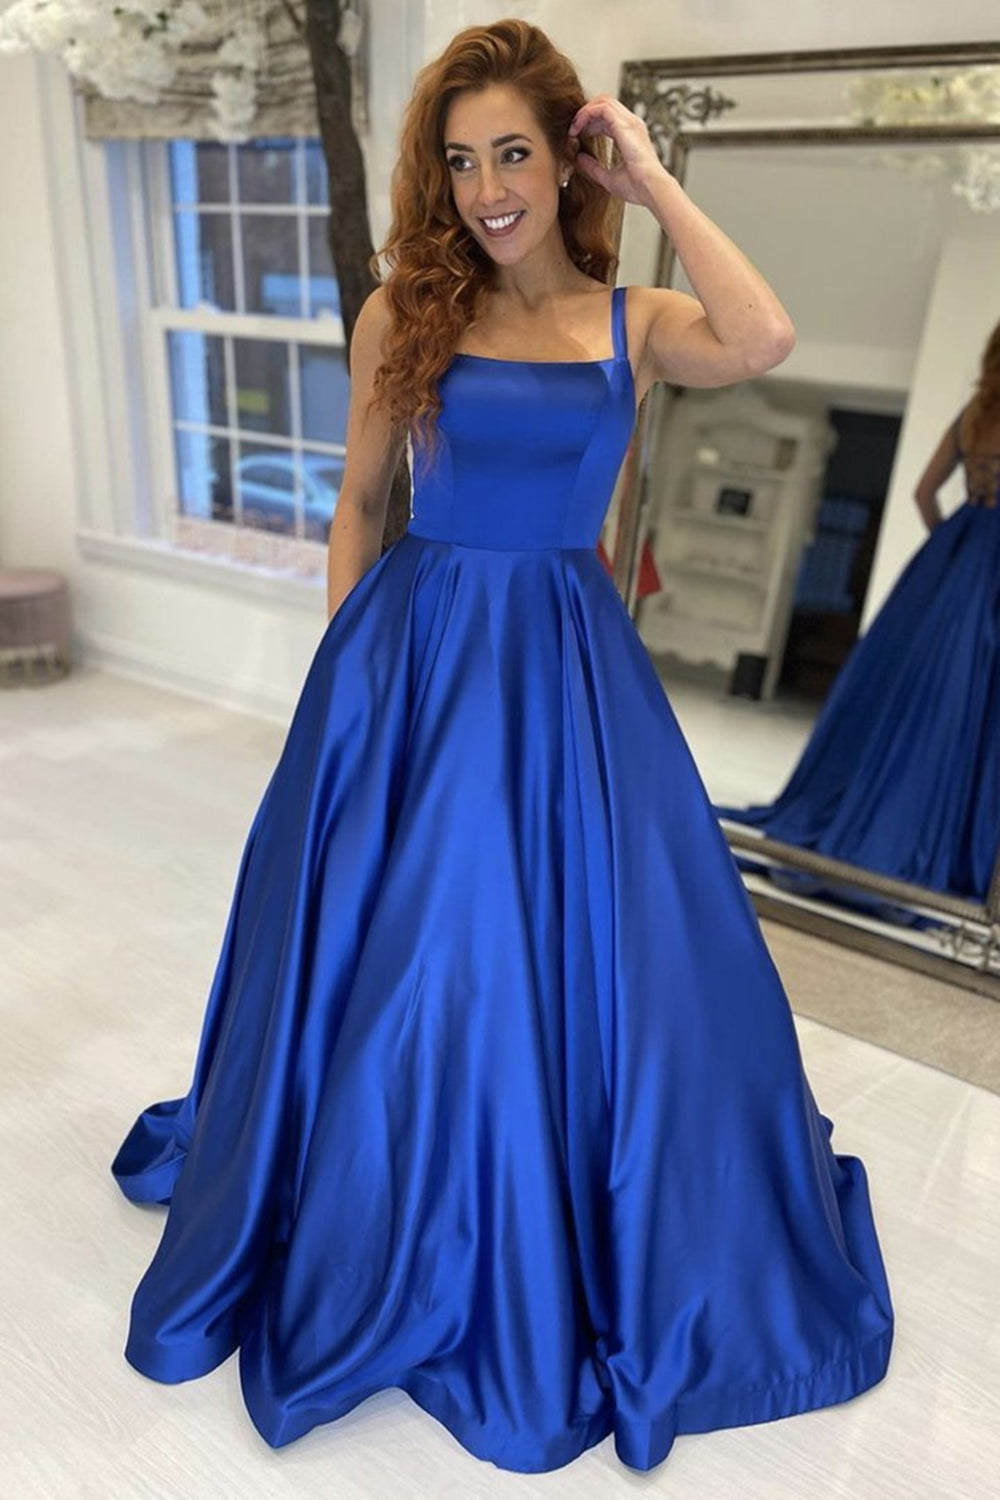 Simple Blue Tulle Tea Length Prom Dress, Tulle Homecoming Dresses – shopluu